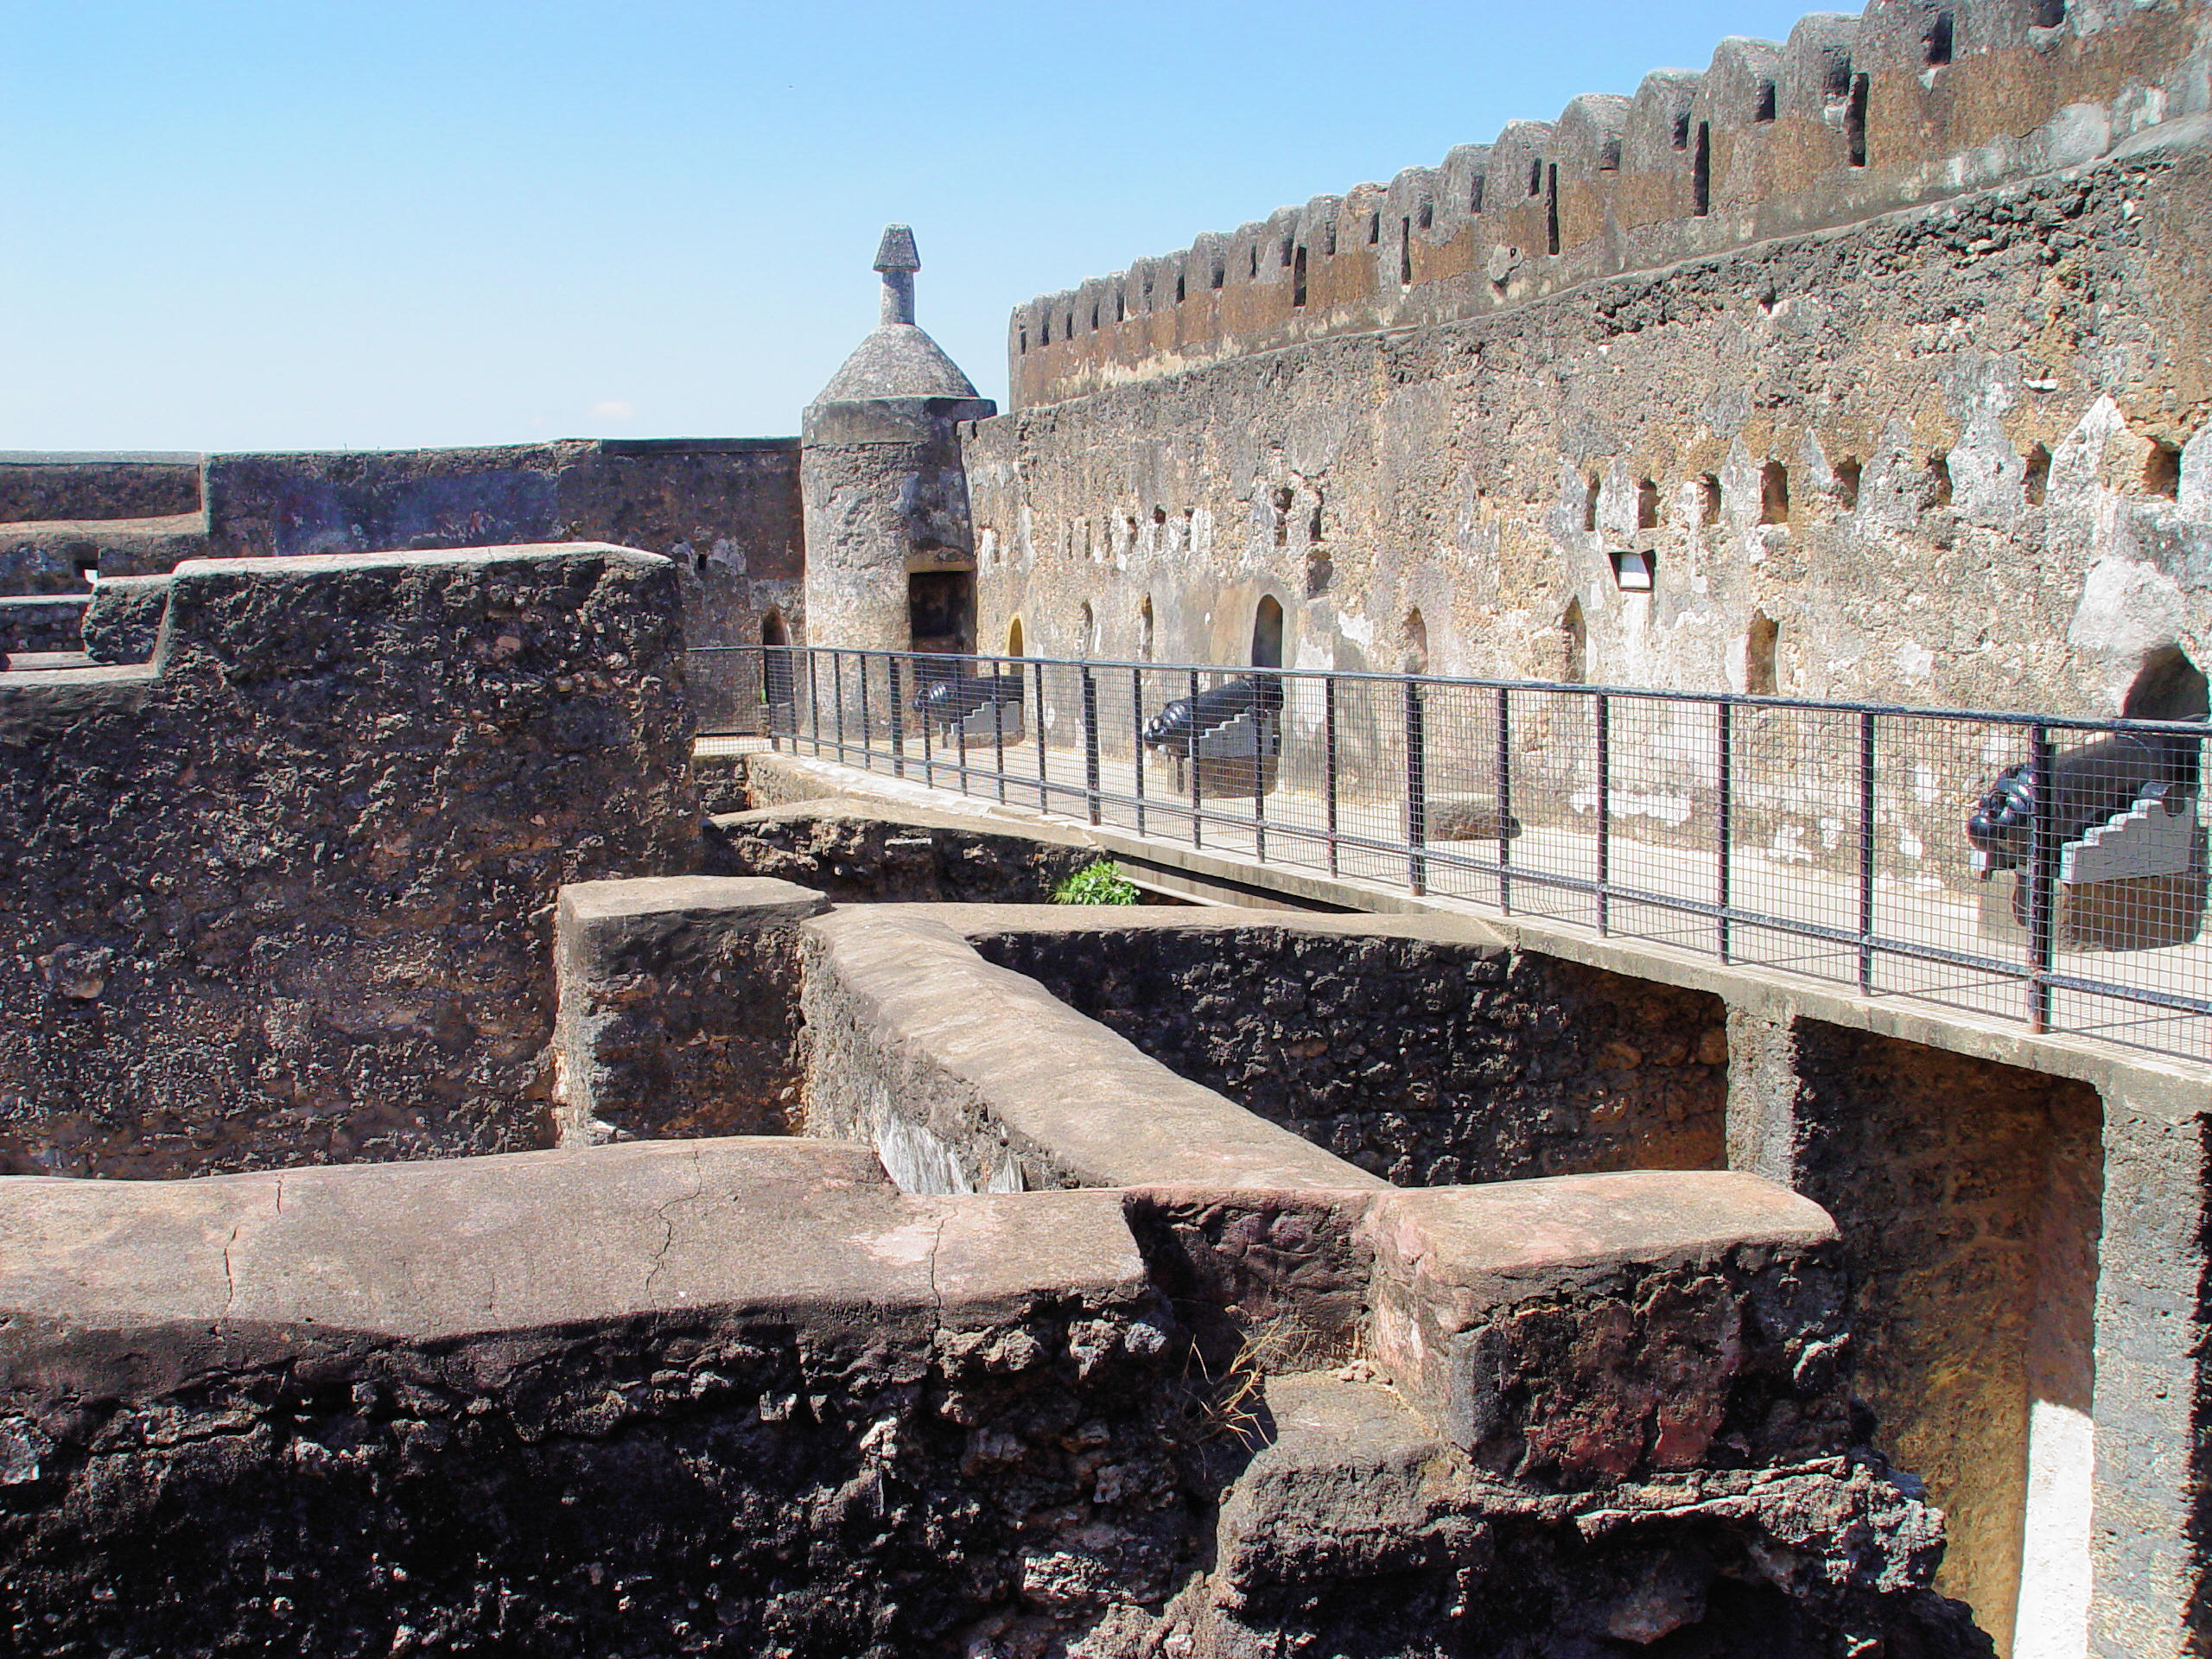 Fort Jesus - East Africa's Oldest White Settlement